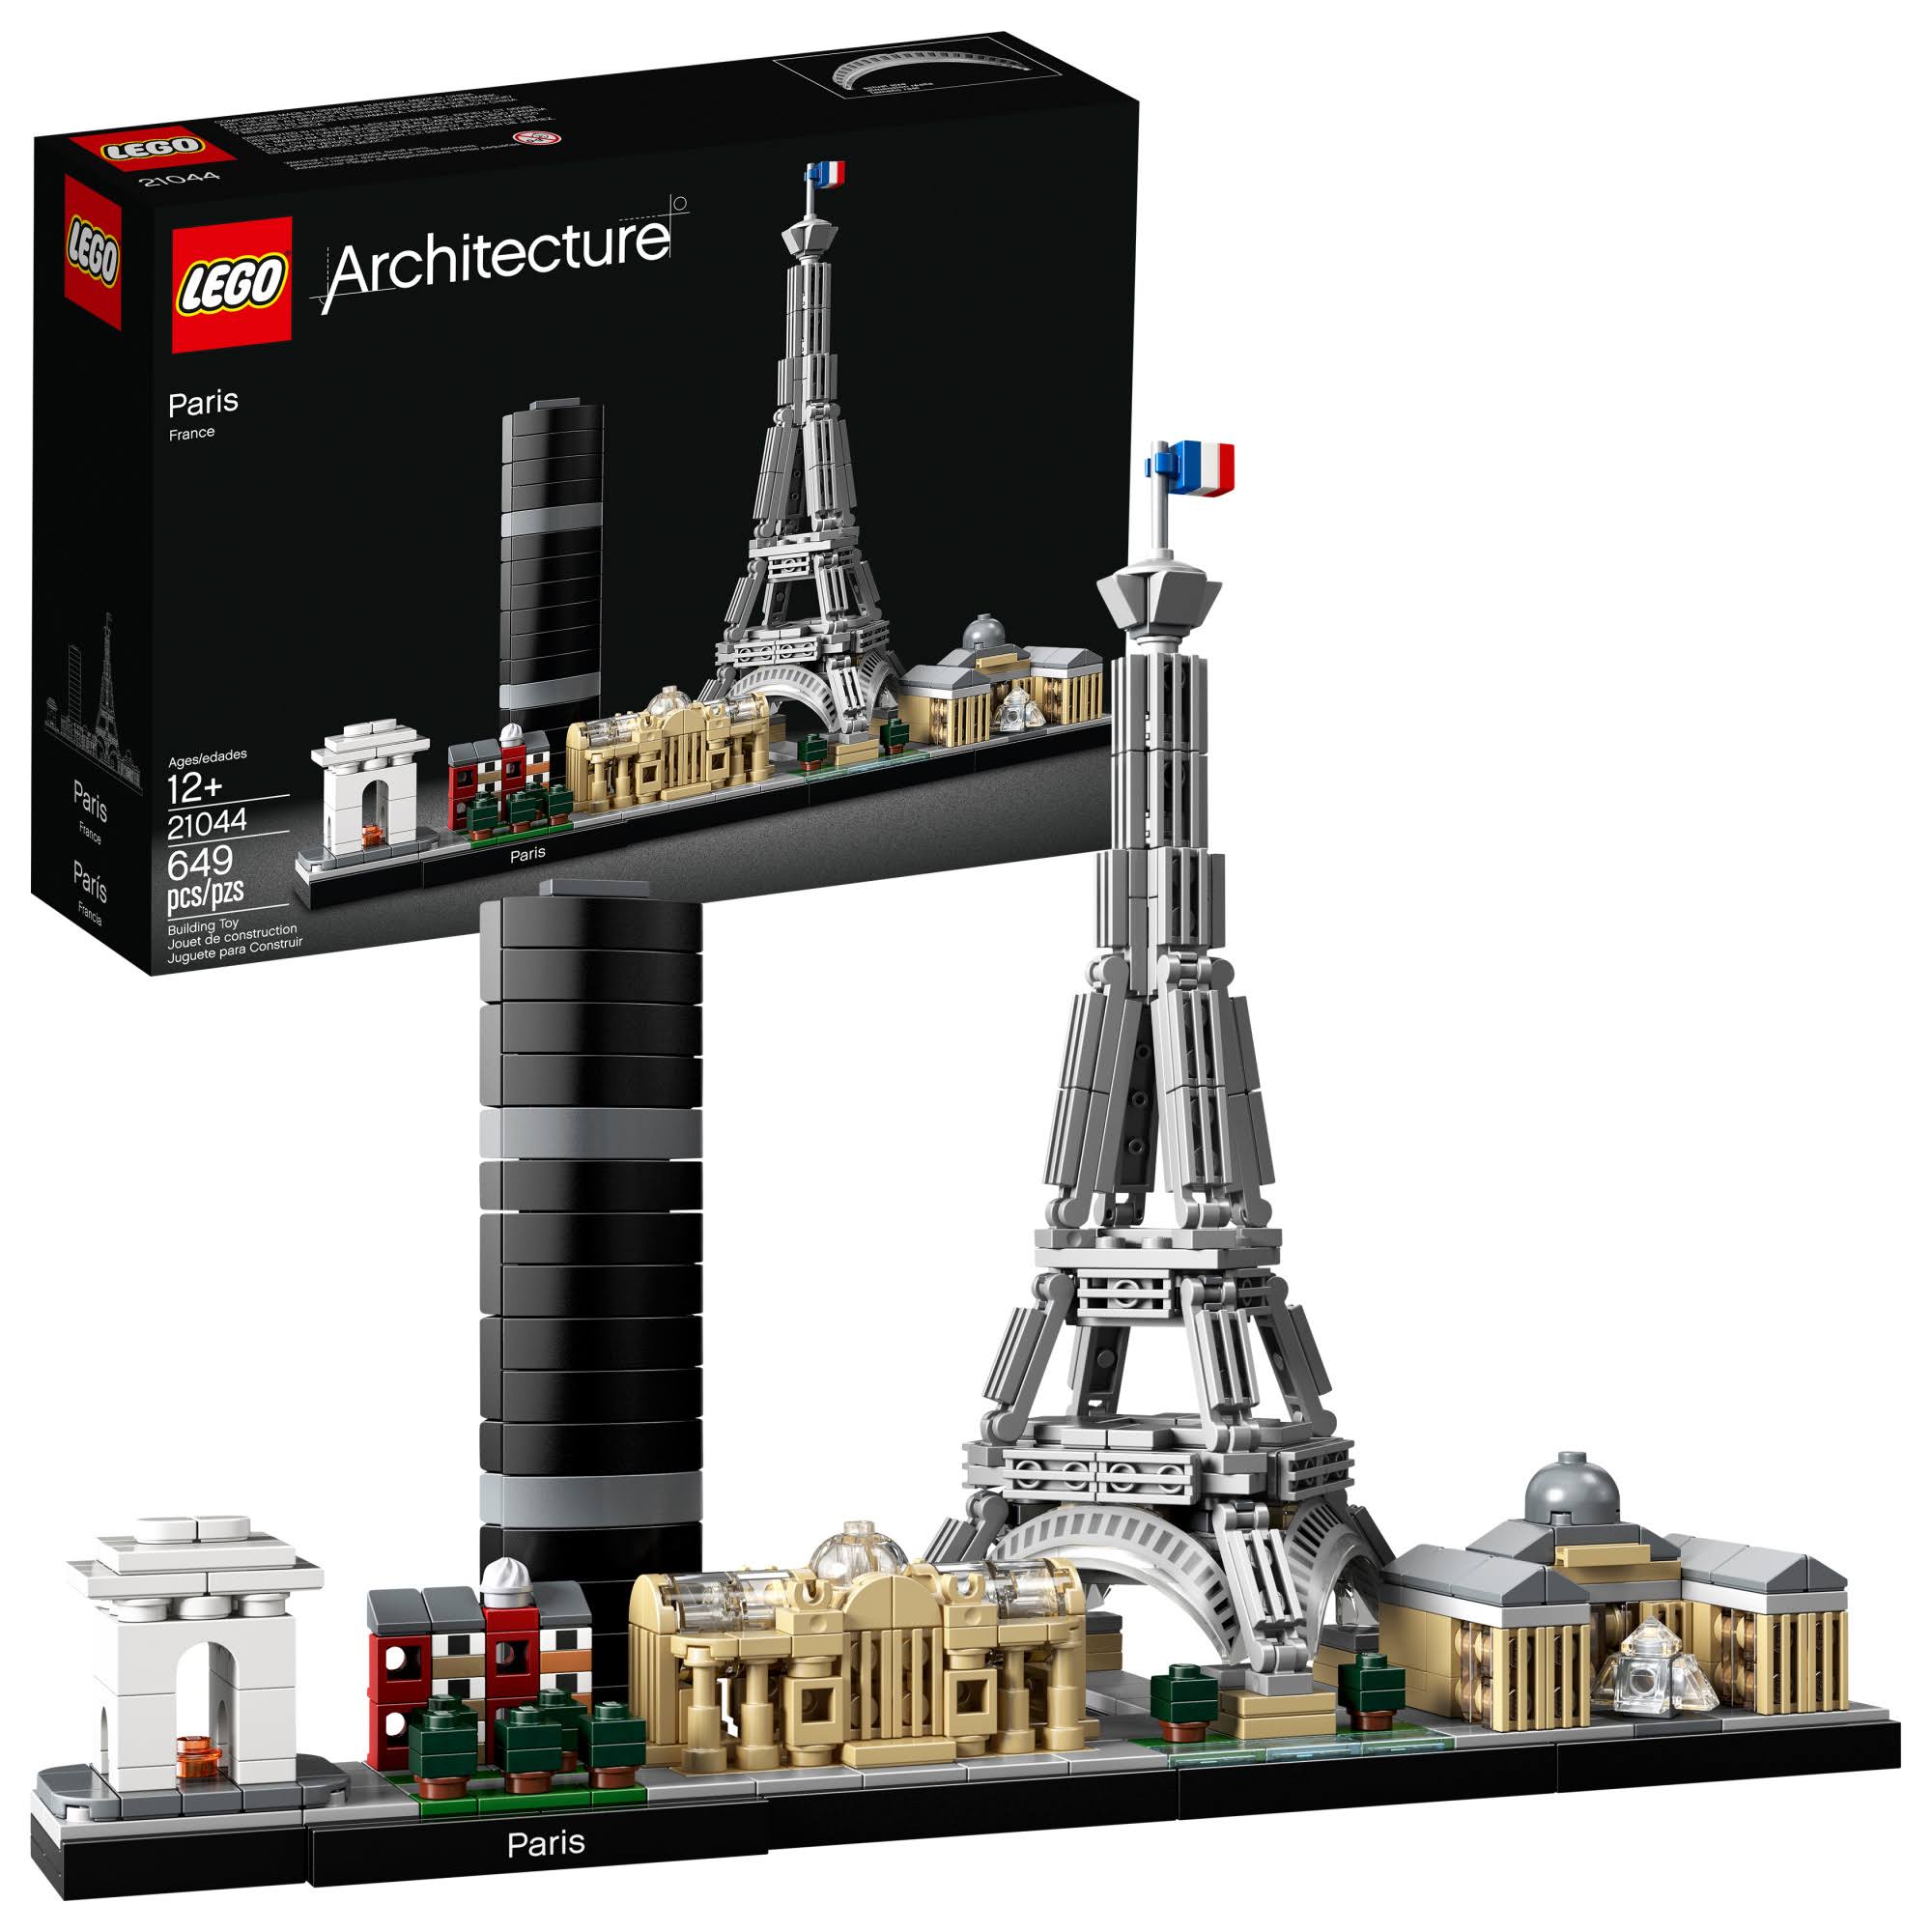 LEGO 21044 Architecture Paris Building Kit